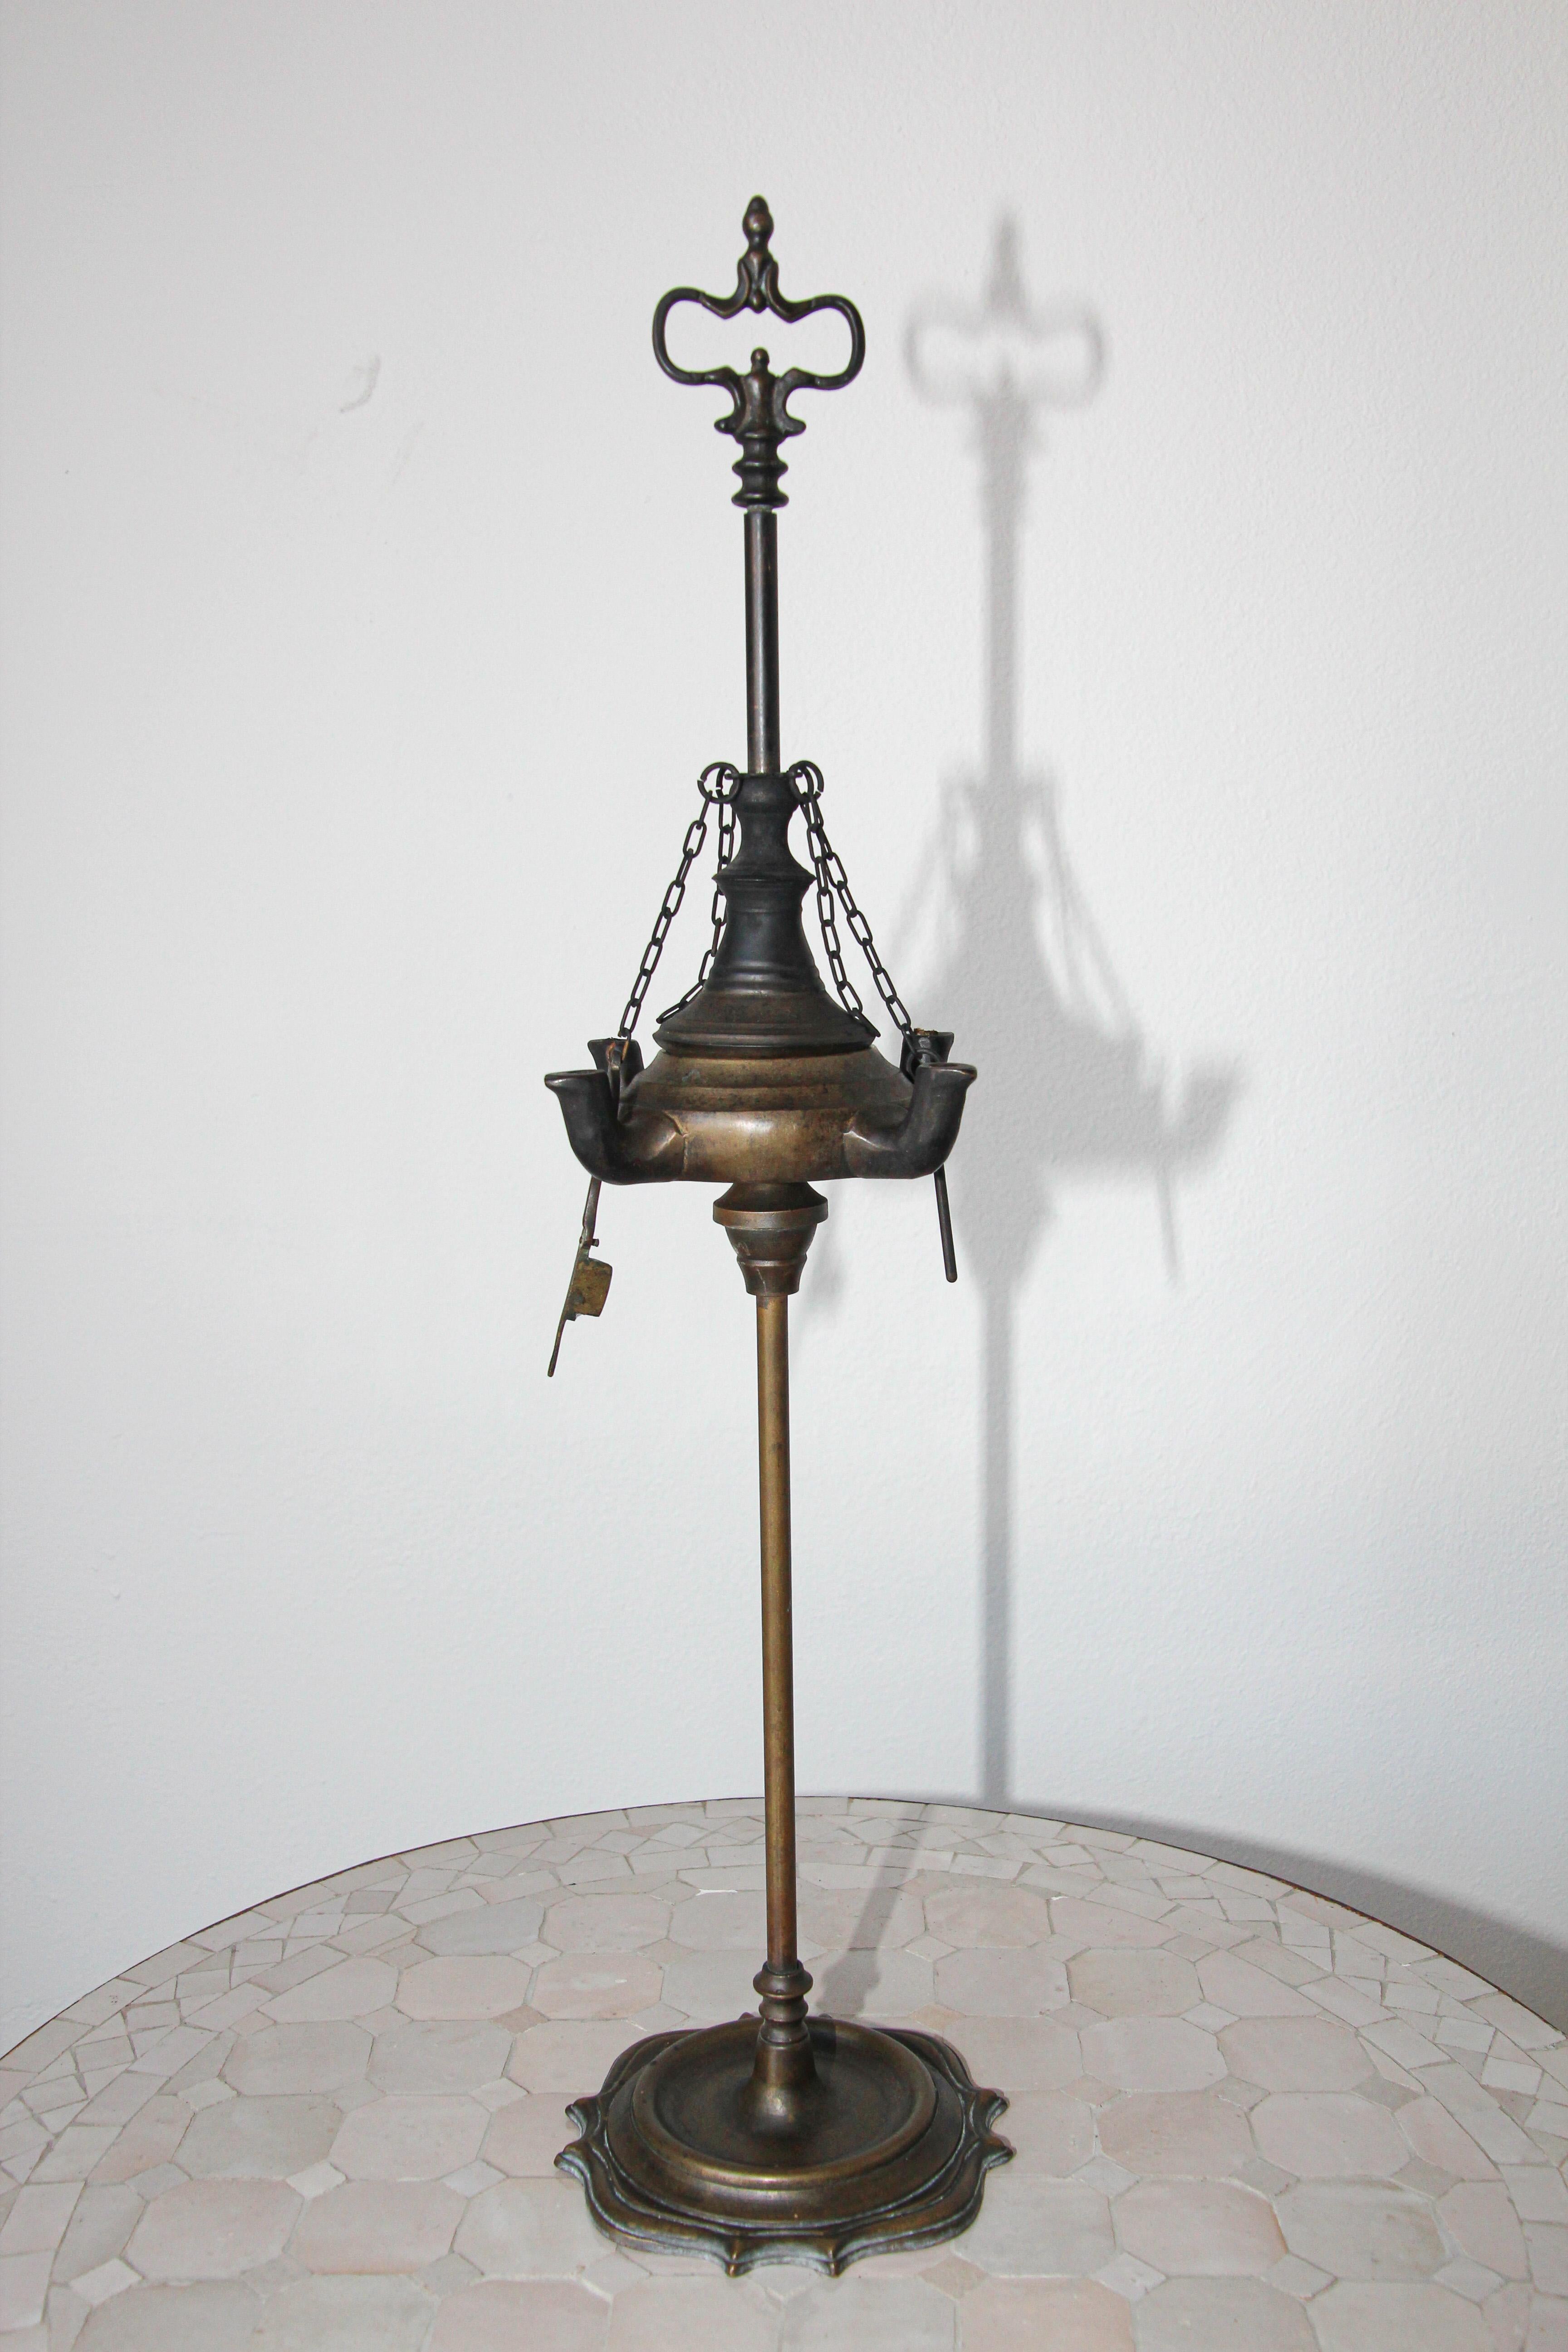 Ancienne lampe à huile de temple en bronze de l'Inde moghole du Rajasthan.
Lampe à huile avec 4 brûleurs à mèche.
Une patine fantastique et une grande échelle.
Utilisé pour les cérémonies sacrées dans les temples ou à la maison.
Fabriqué en